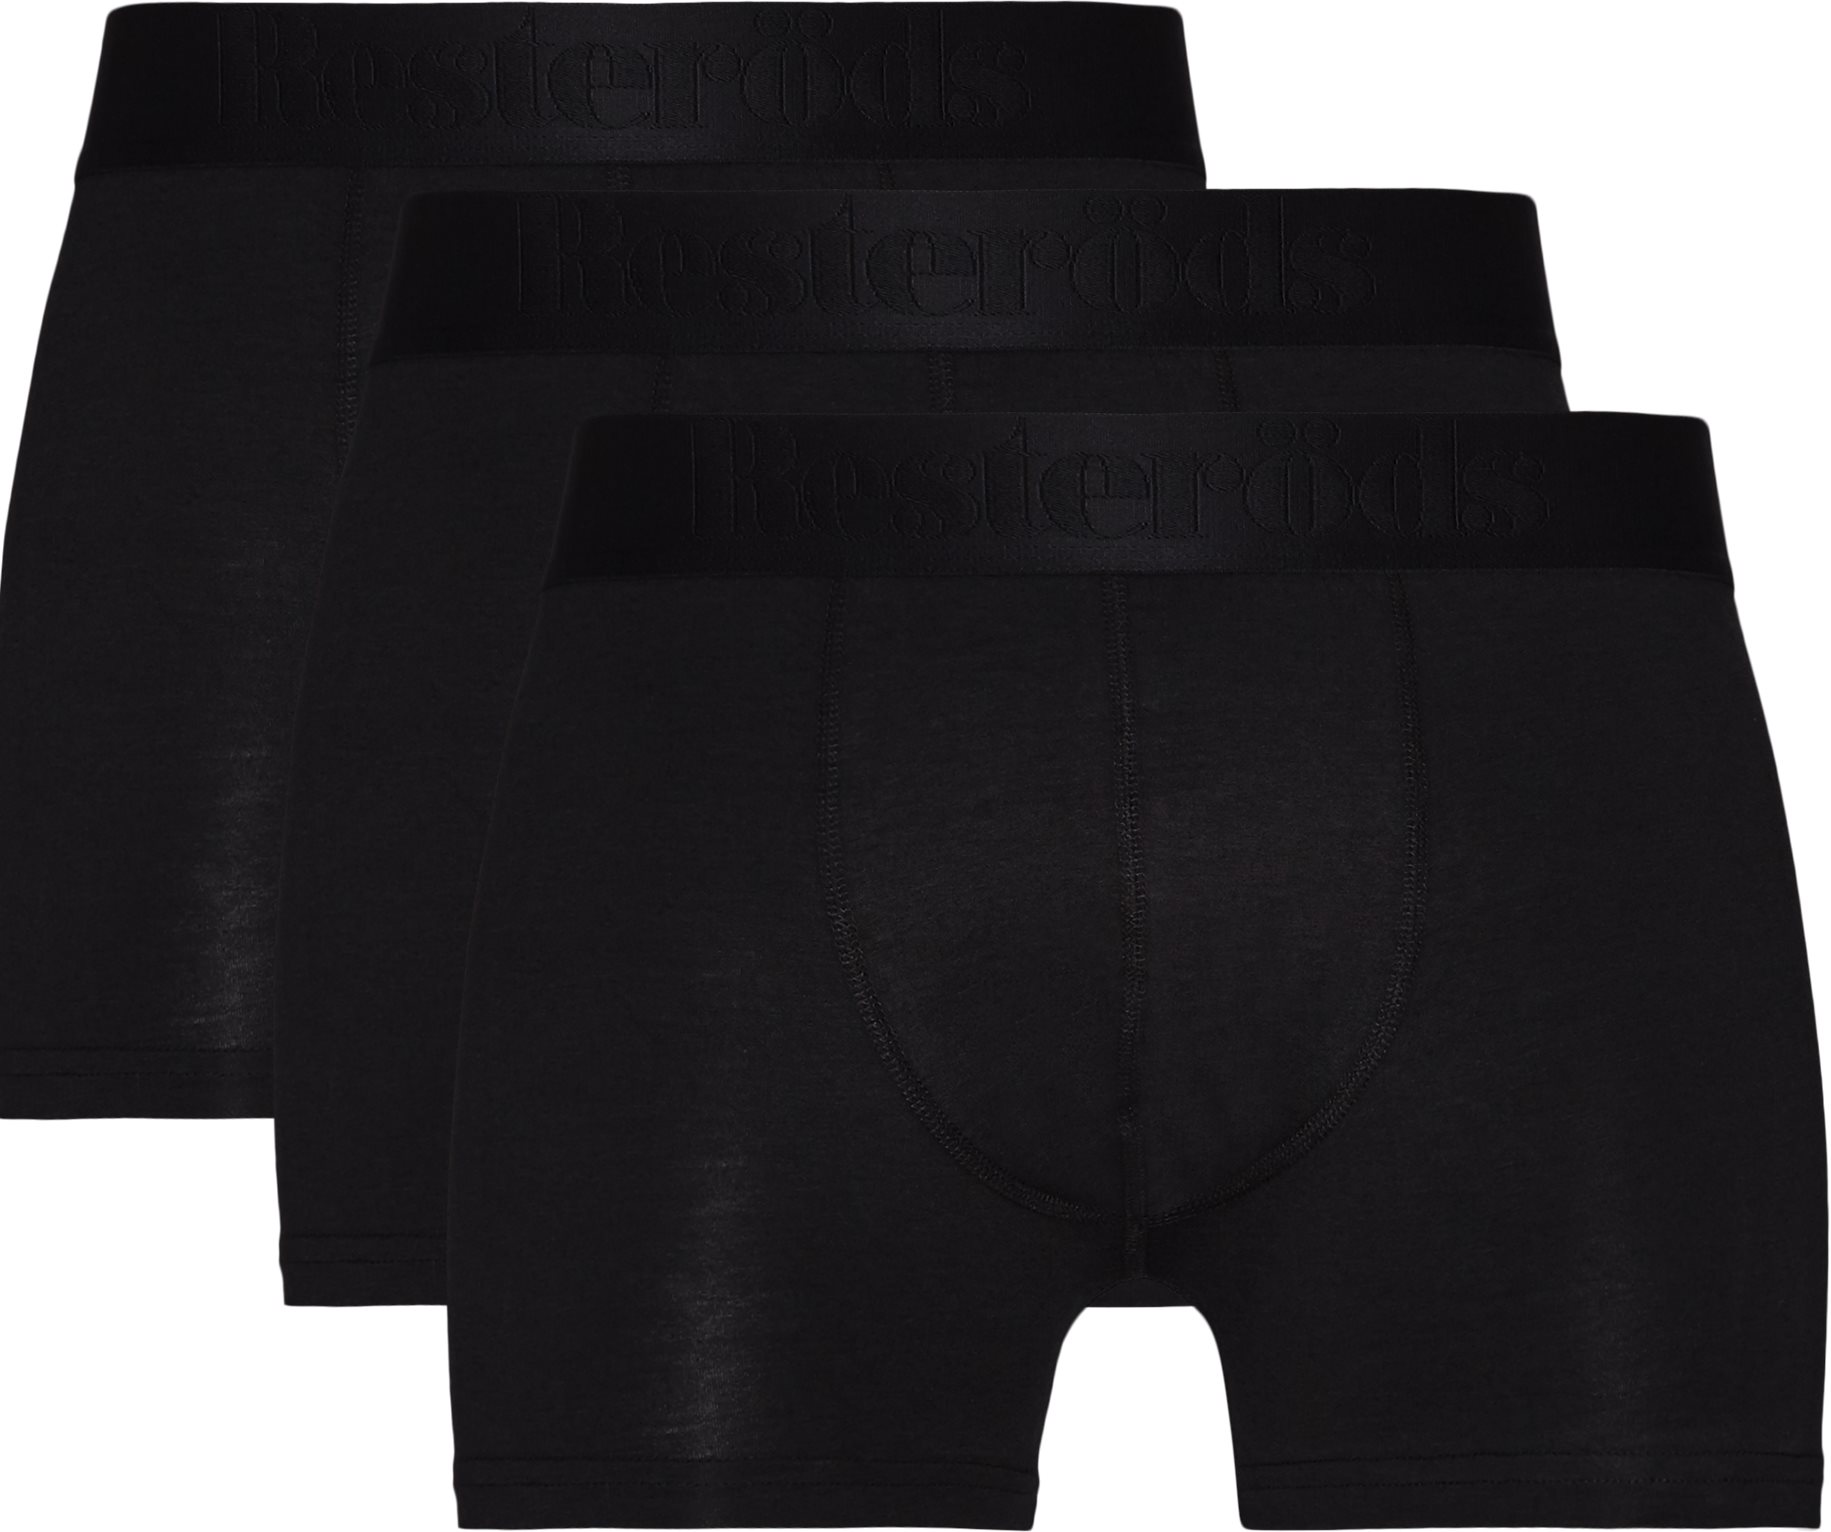 Resteröds Underwear 7934-49 BAMBOO 3 PK Black